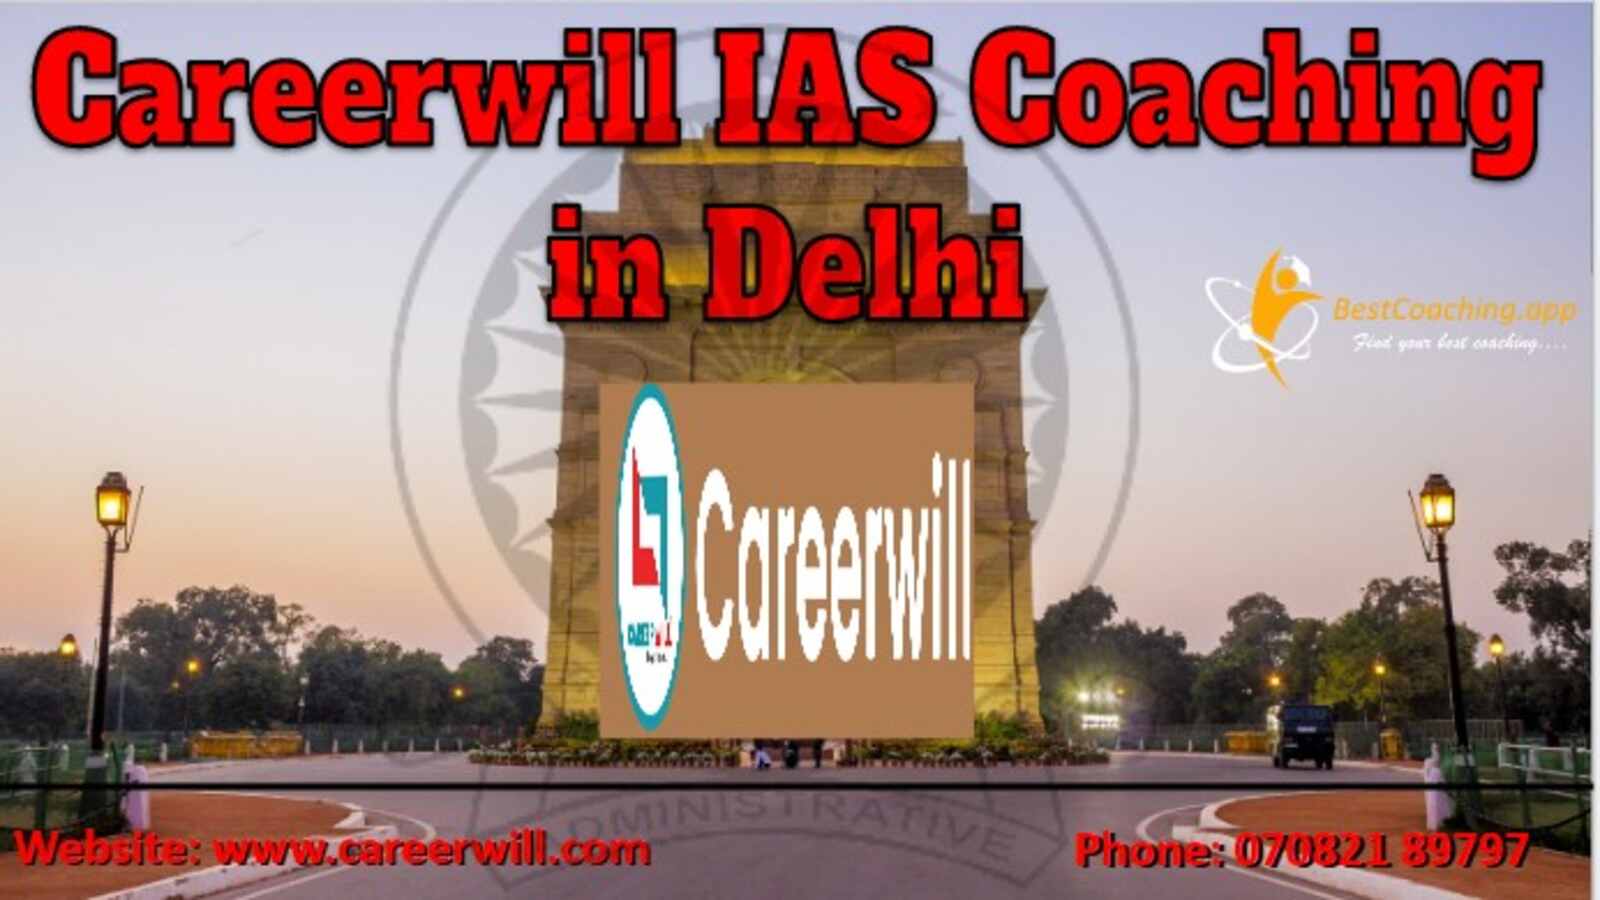 Careerwill IAS Coaching in Delhi